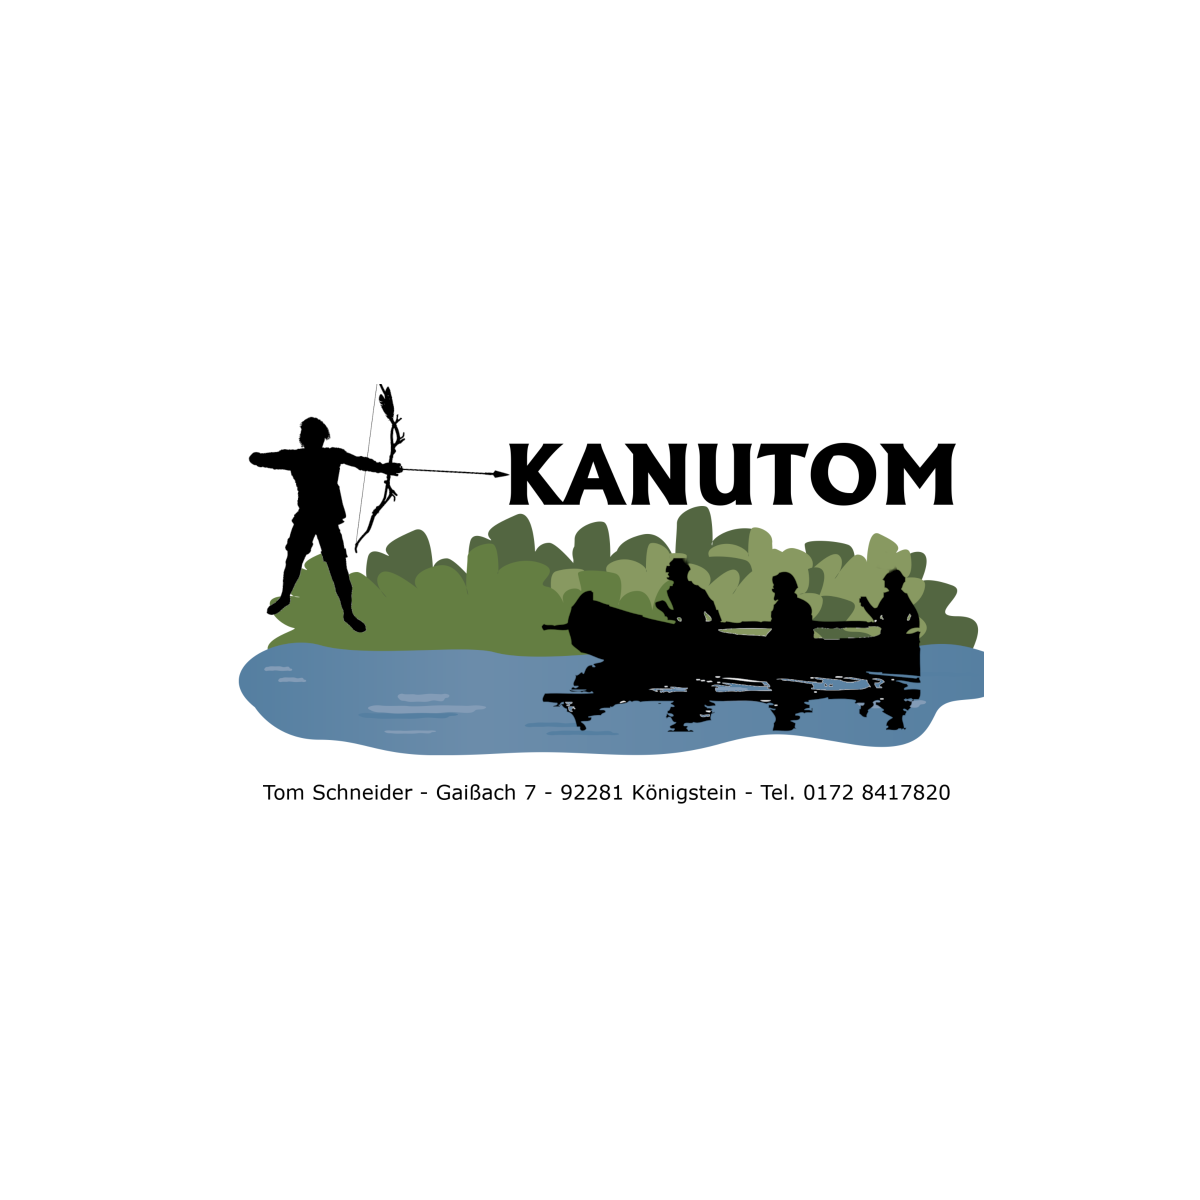 Kanuverleih und Bogensport Kanutom in Königstein in der Oberpfalz - Logo